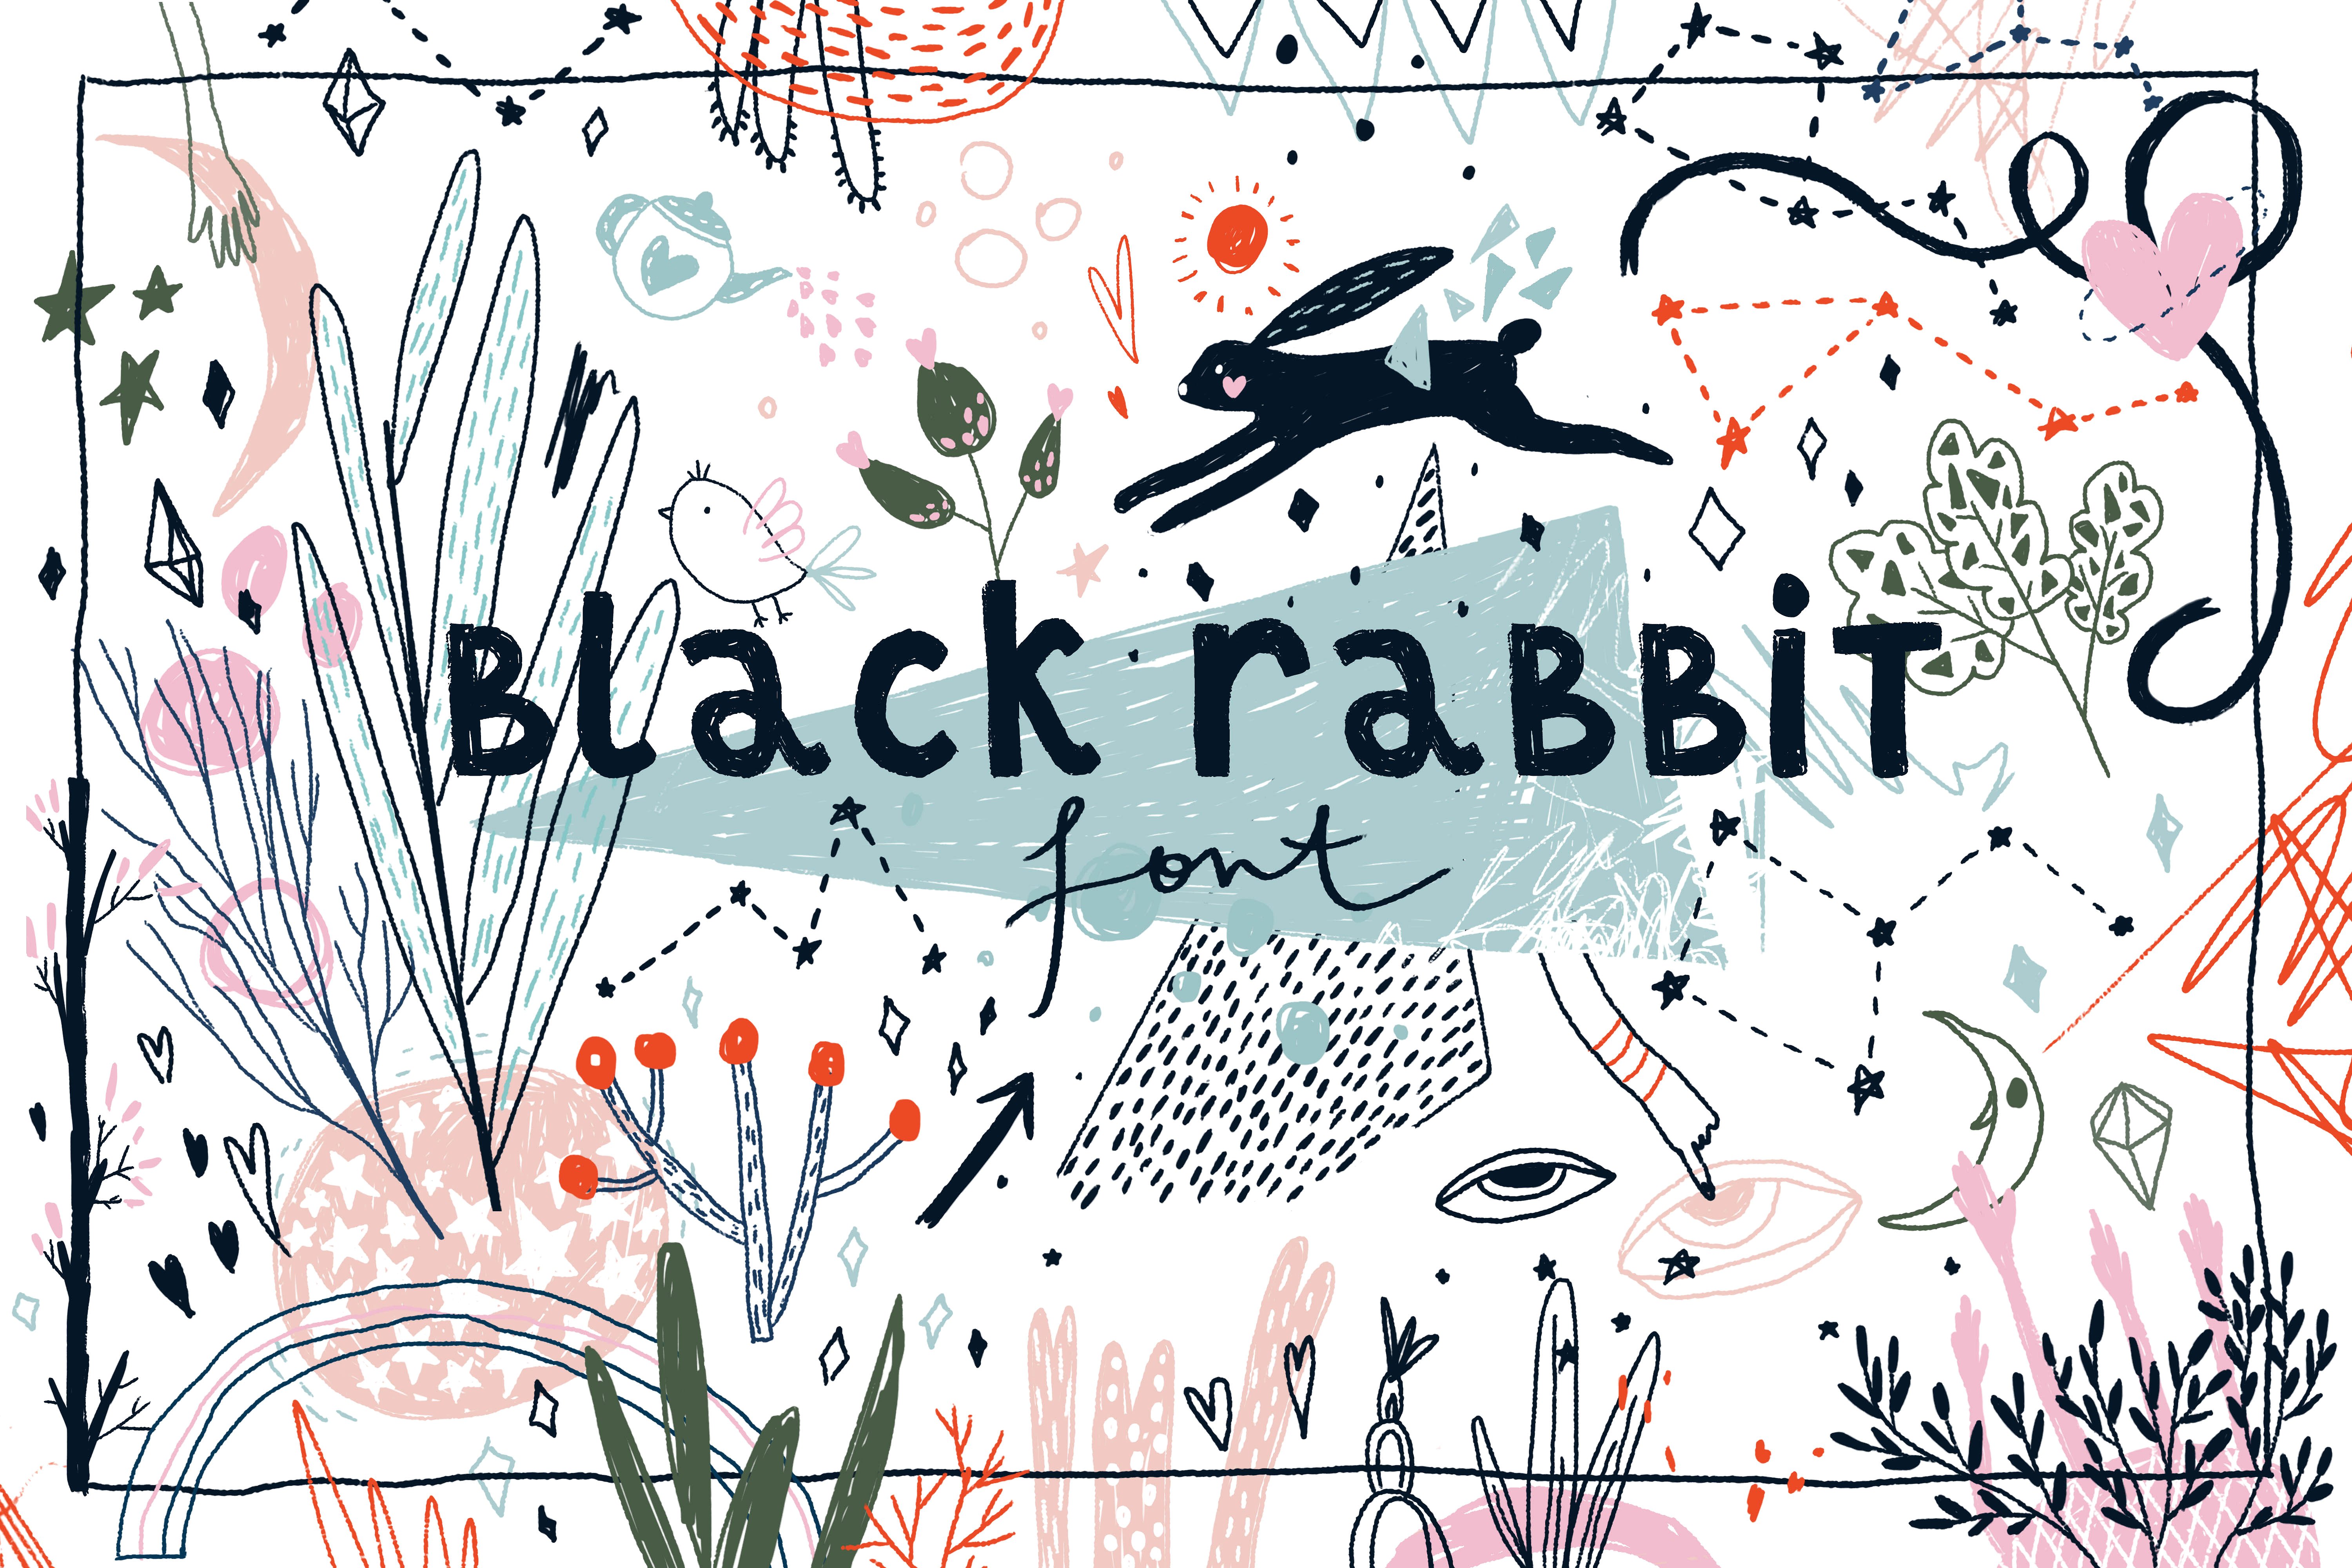 非常酷的手绘字体 Black Rabbit Font插图